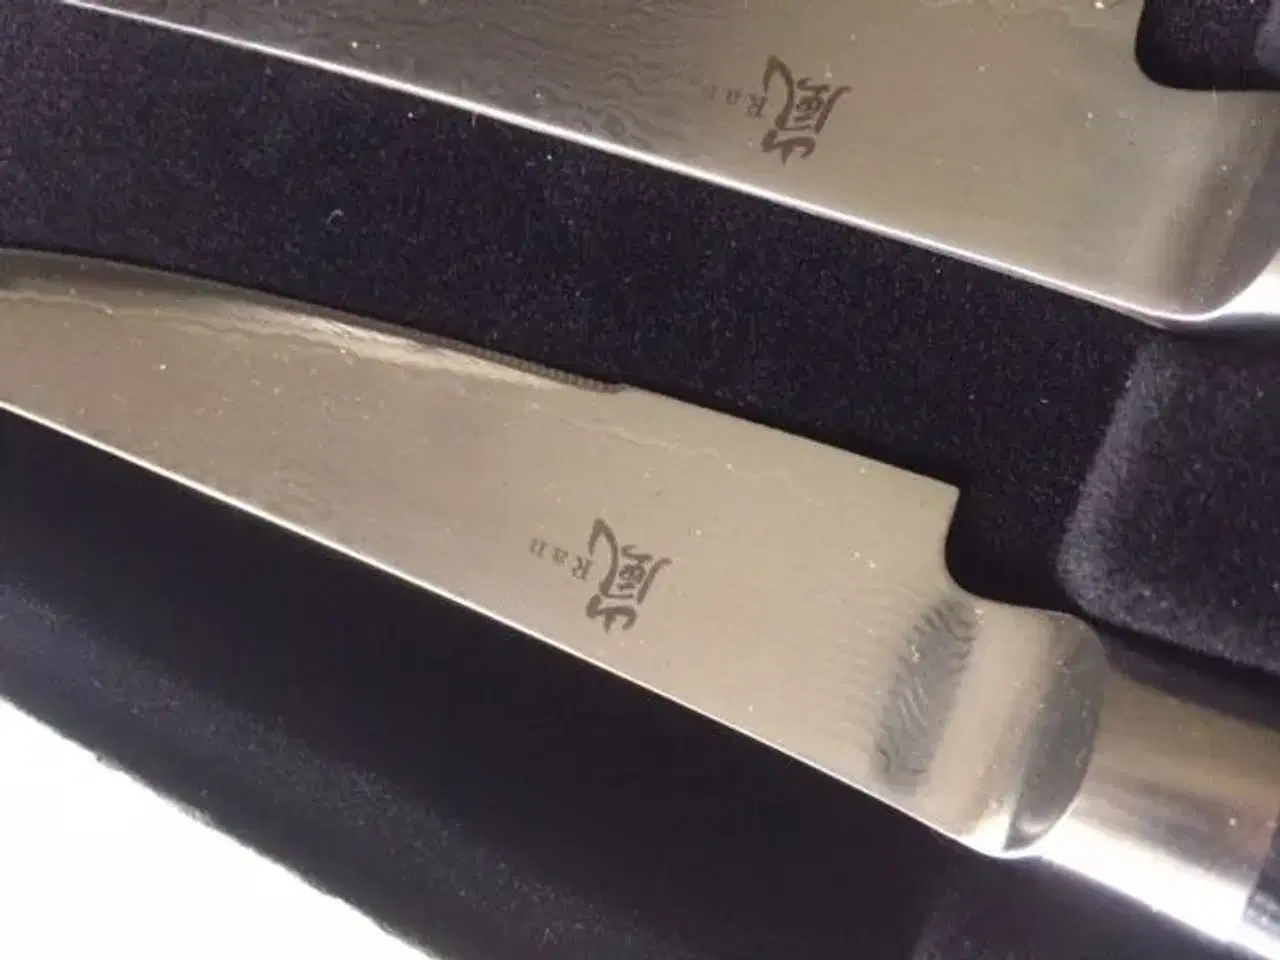 Billede 2 - Steak kniv mærket RAN